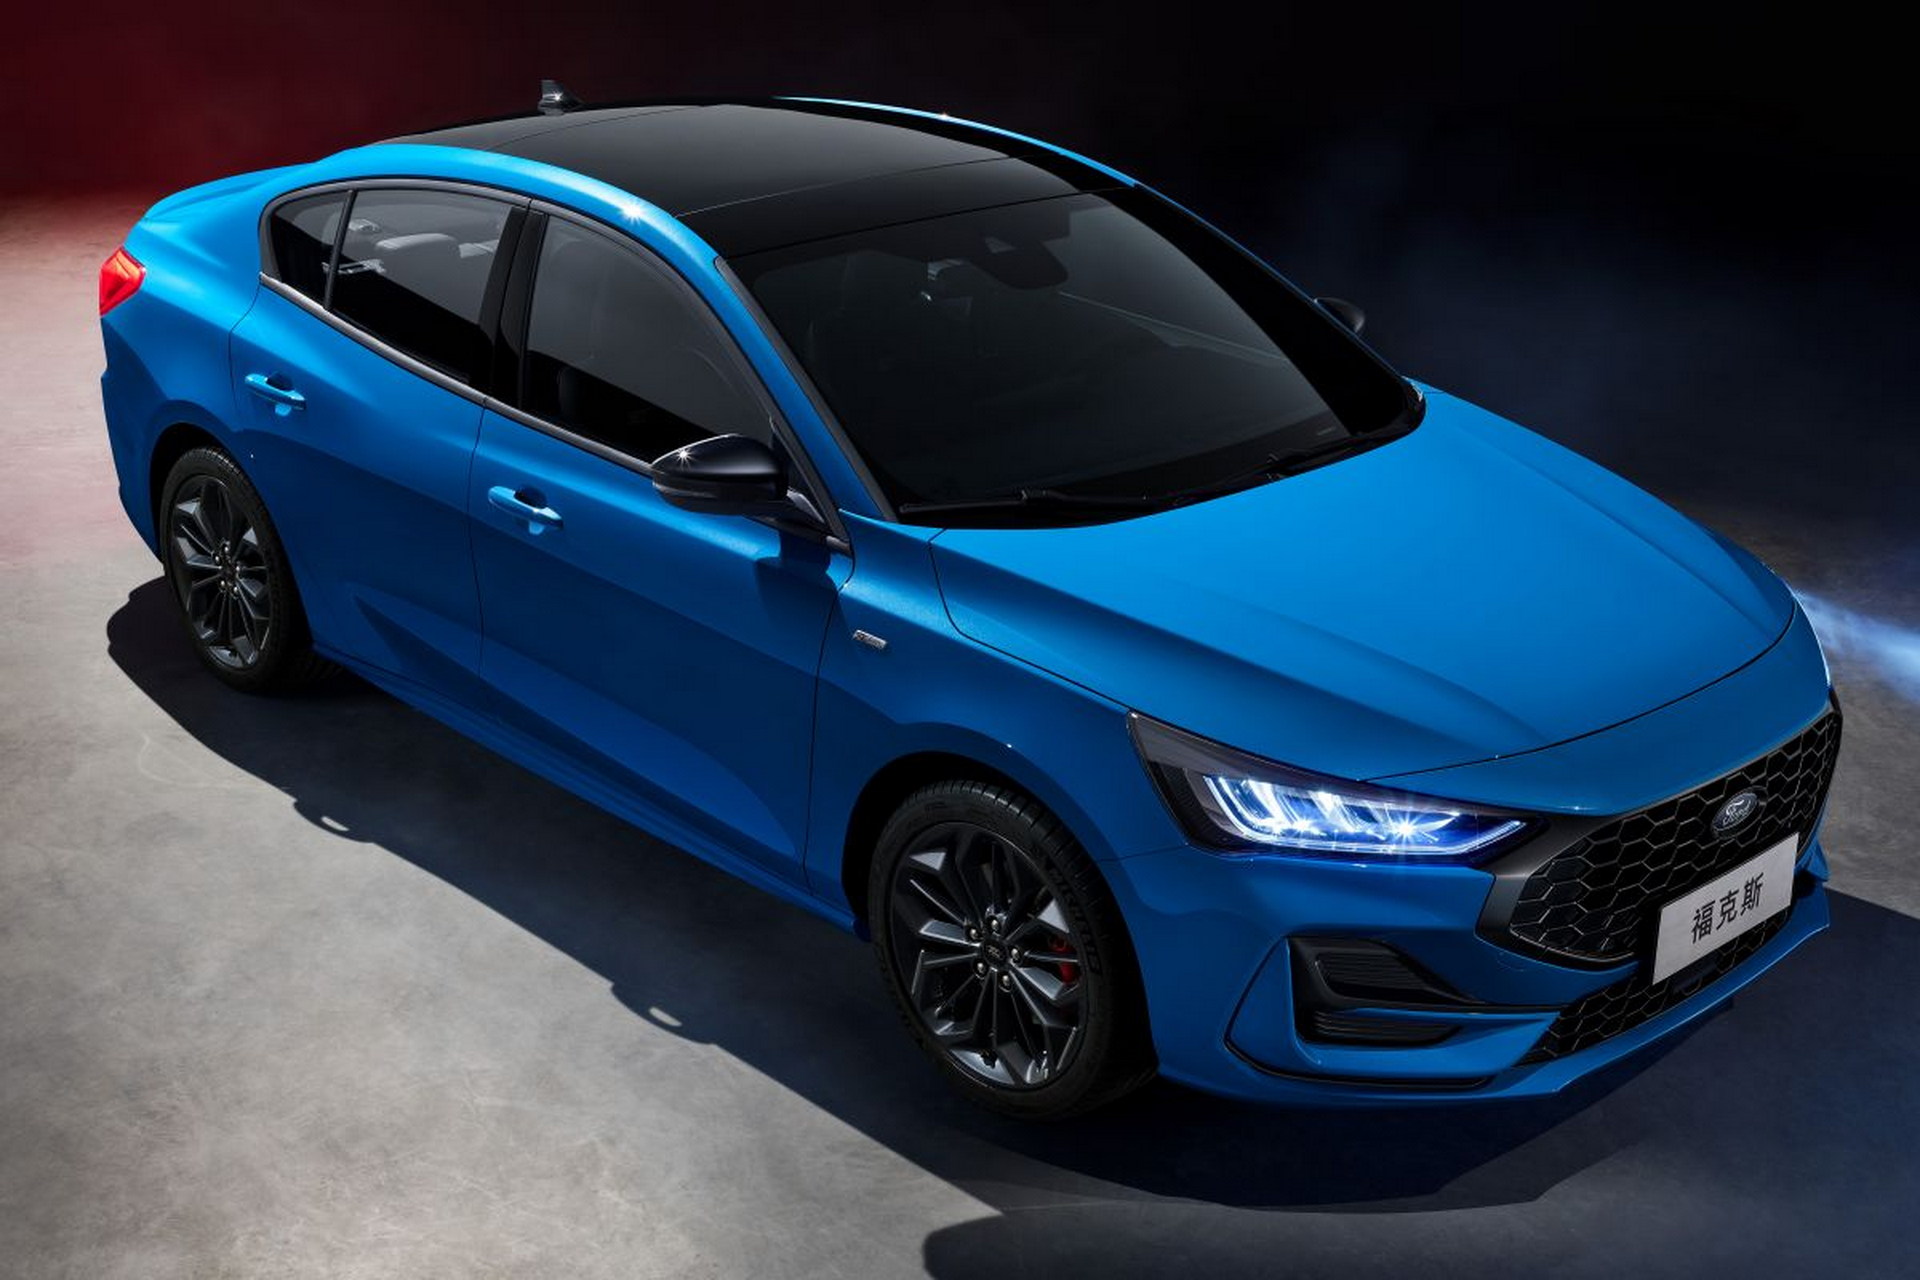 Çin'in makyajlı 2022 Ford Focus'u tanıtıldı: İşte tasarımı ve özellikleri